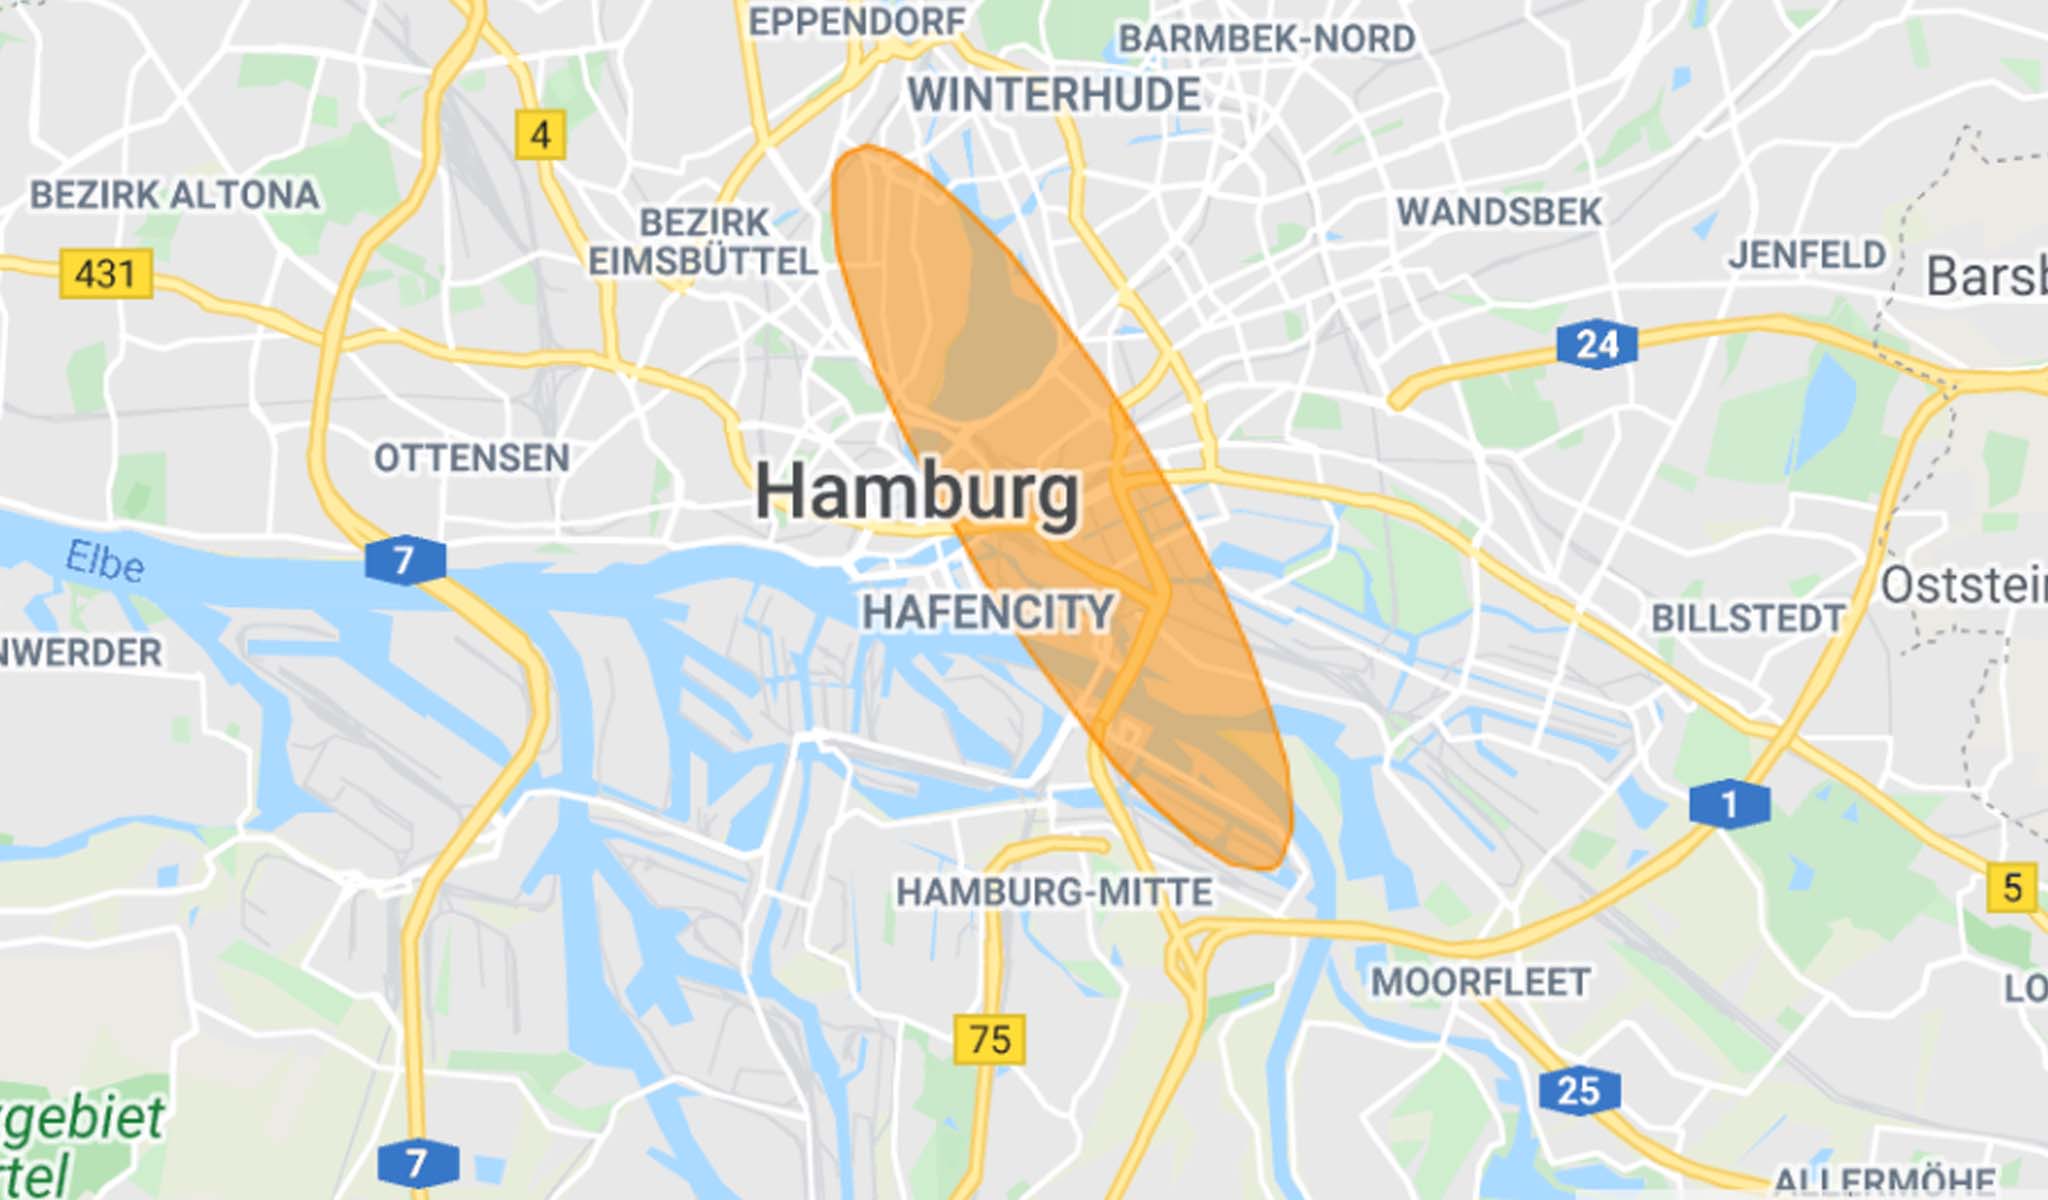 Über der Karte Hamburgs ist eine große orange Ellipse gezogen